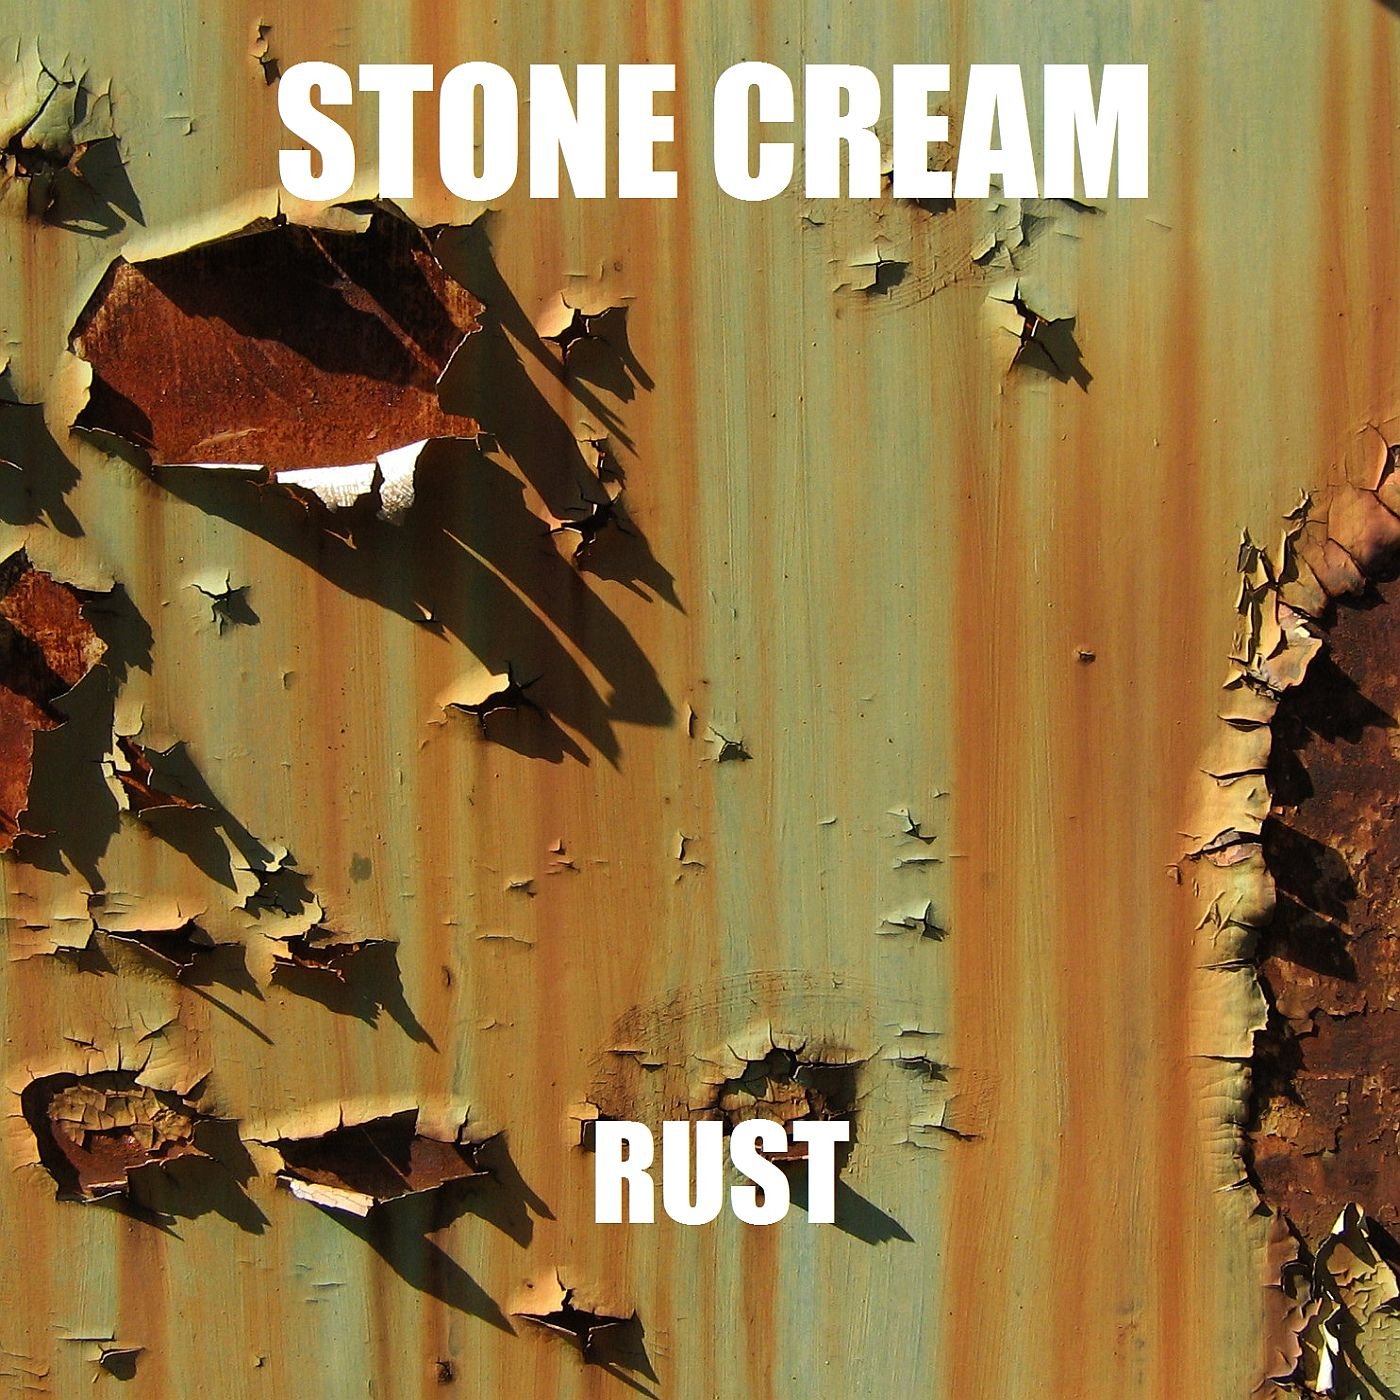 Stone cream